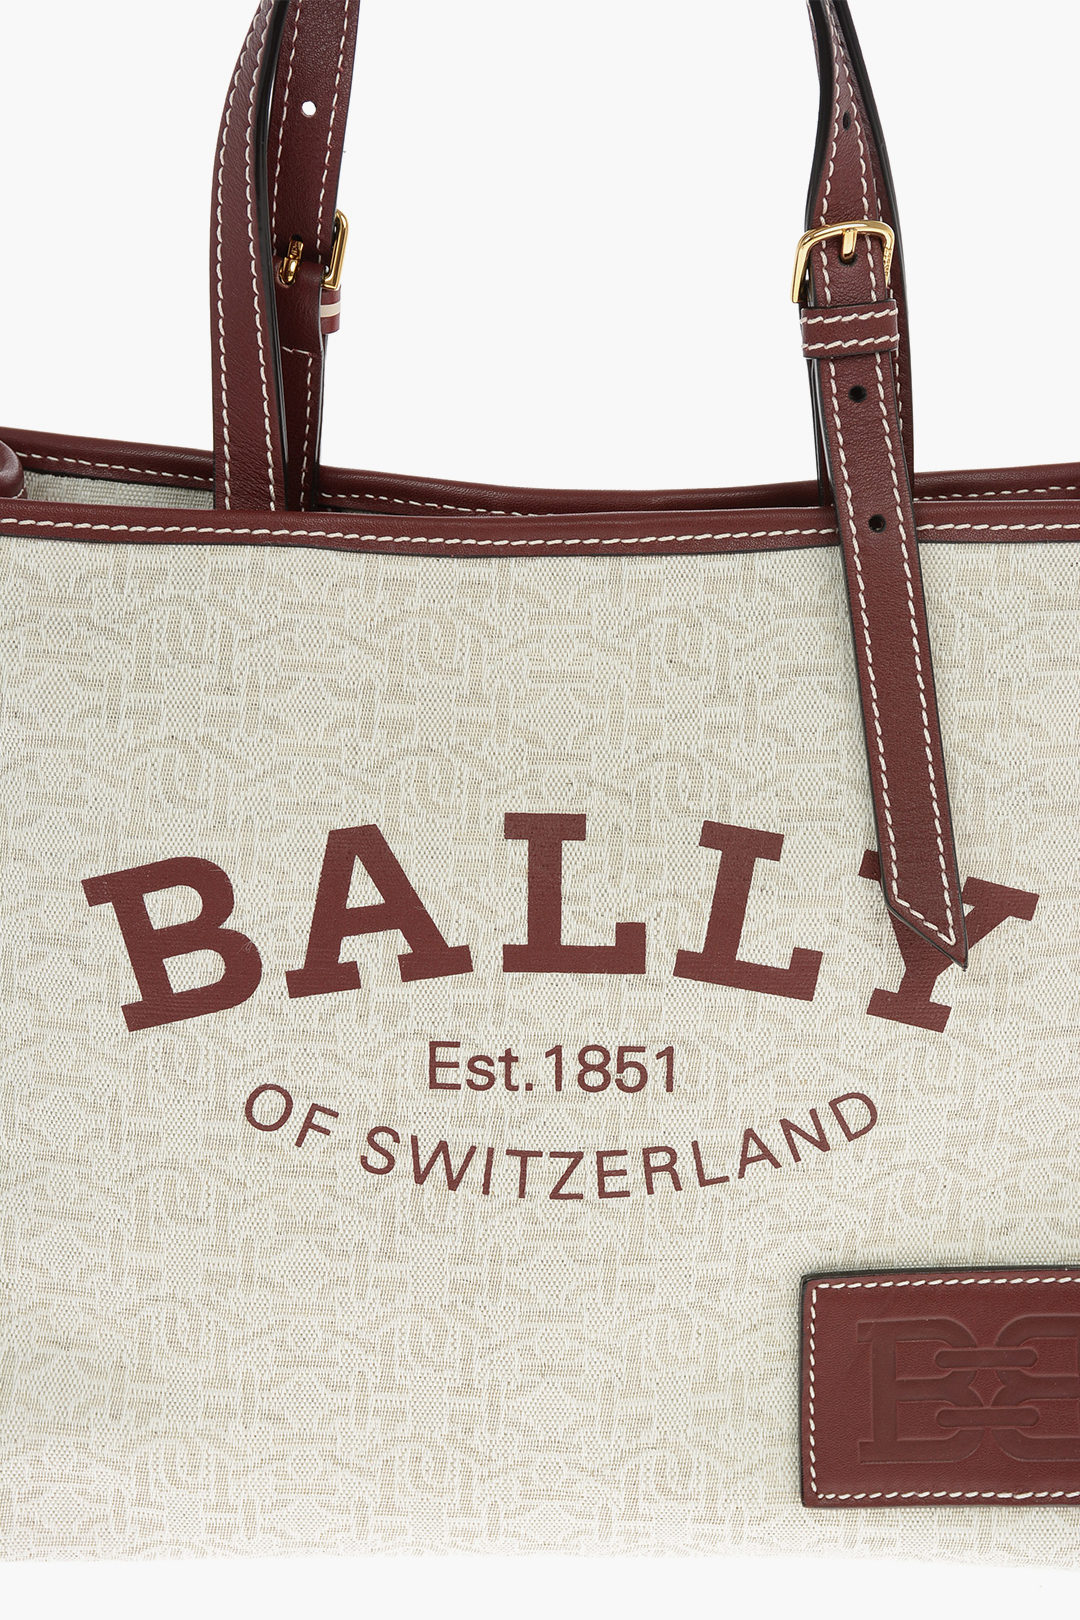 bally leather bag